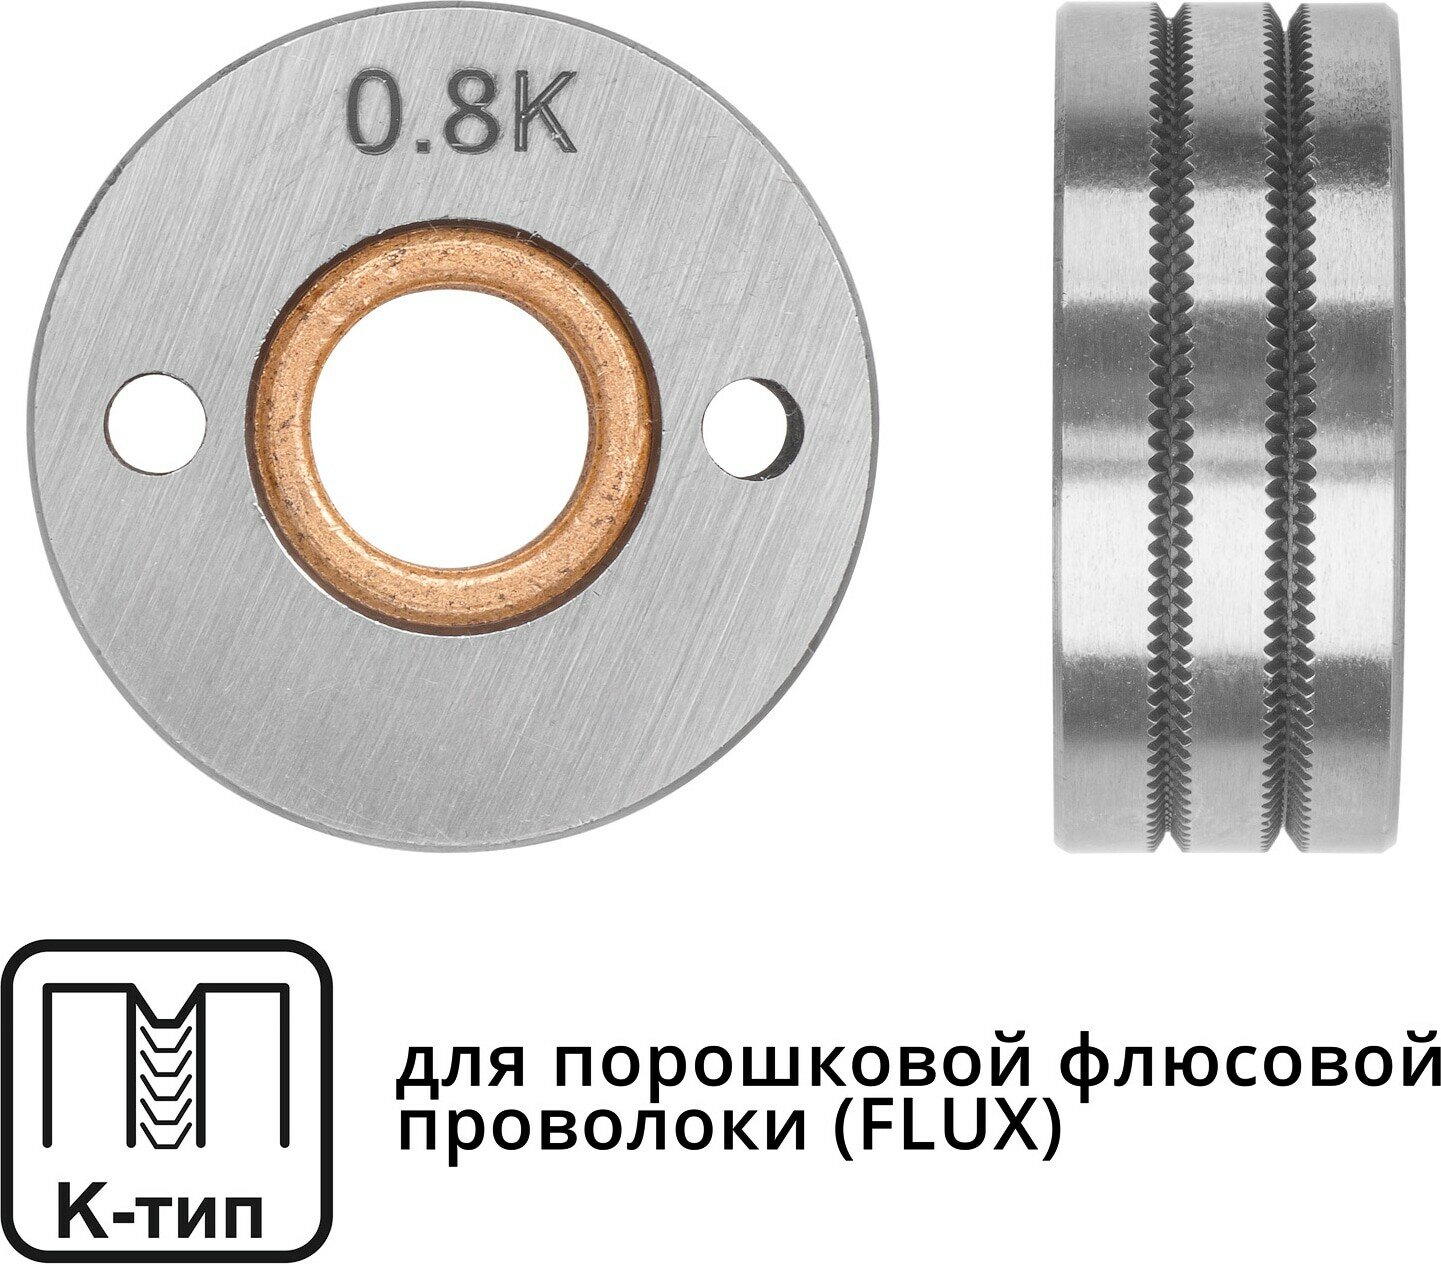 Ролик подающий ф 30/10 мм шир. 12 мм проволока ф 08-10 мм (K-тип) (для флюсовой (FLUX) проволоки) (WA-2435) (SOLARIS)